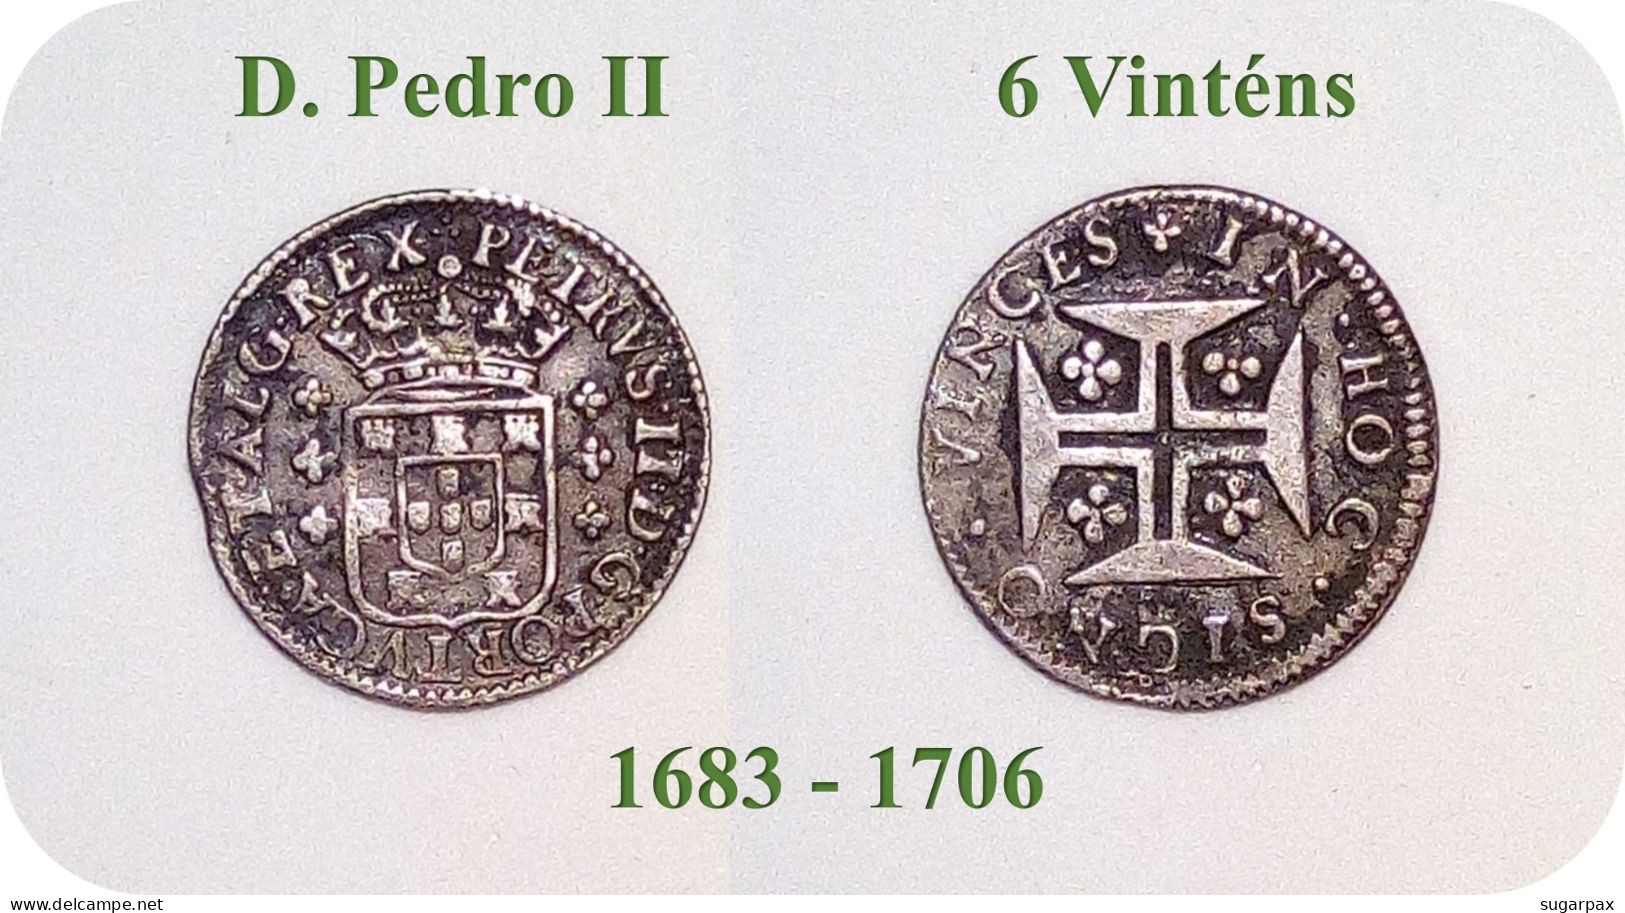 D. Pedro II - 6 Vinténs - N/D ( 1683 - 1706 ) - KM # 143 - SILVER ( Ag 916,6 ) - A.G. 49.01 - Monarquia Portugal - Portugal